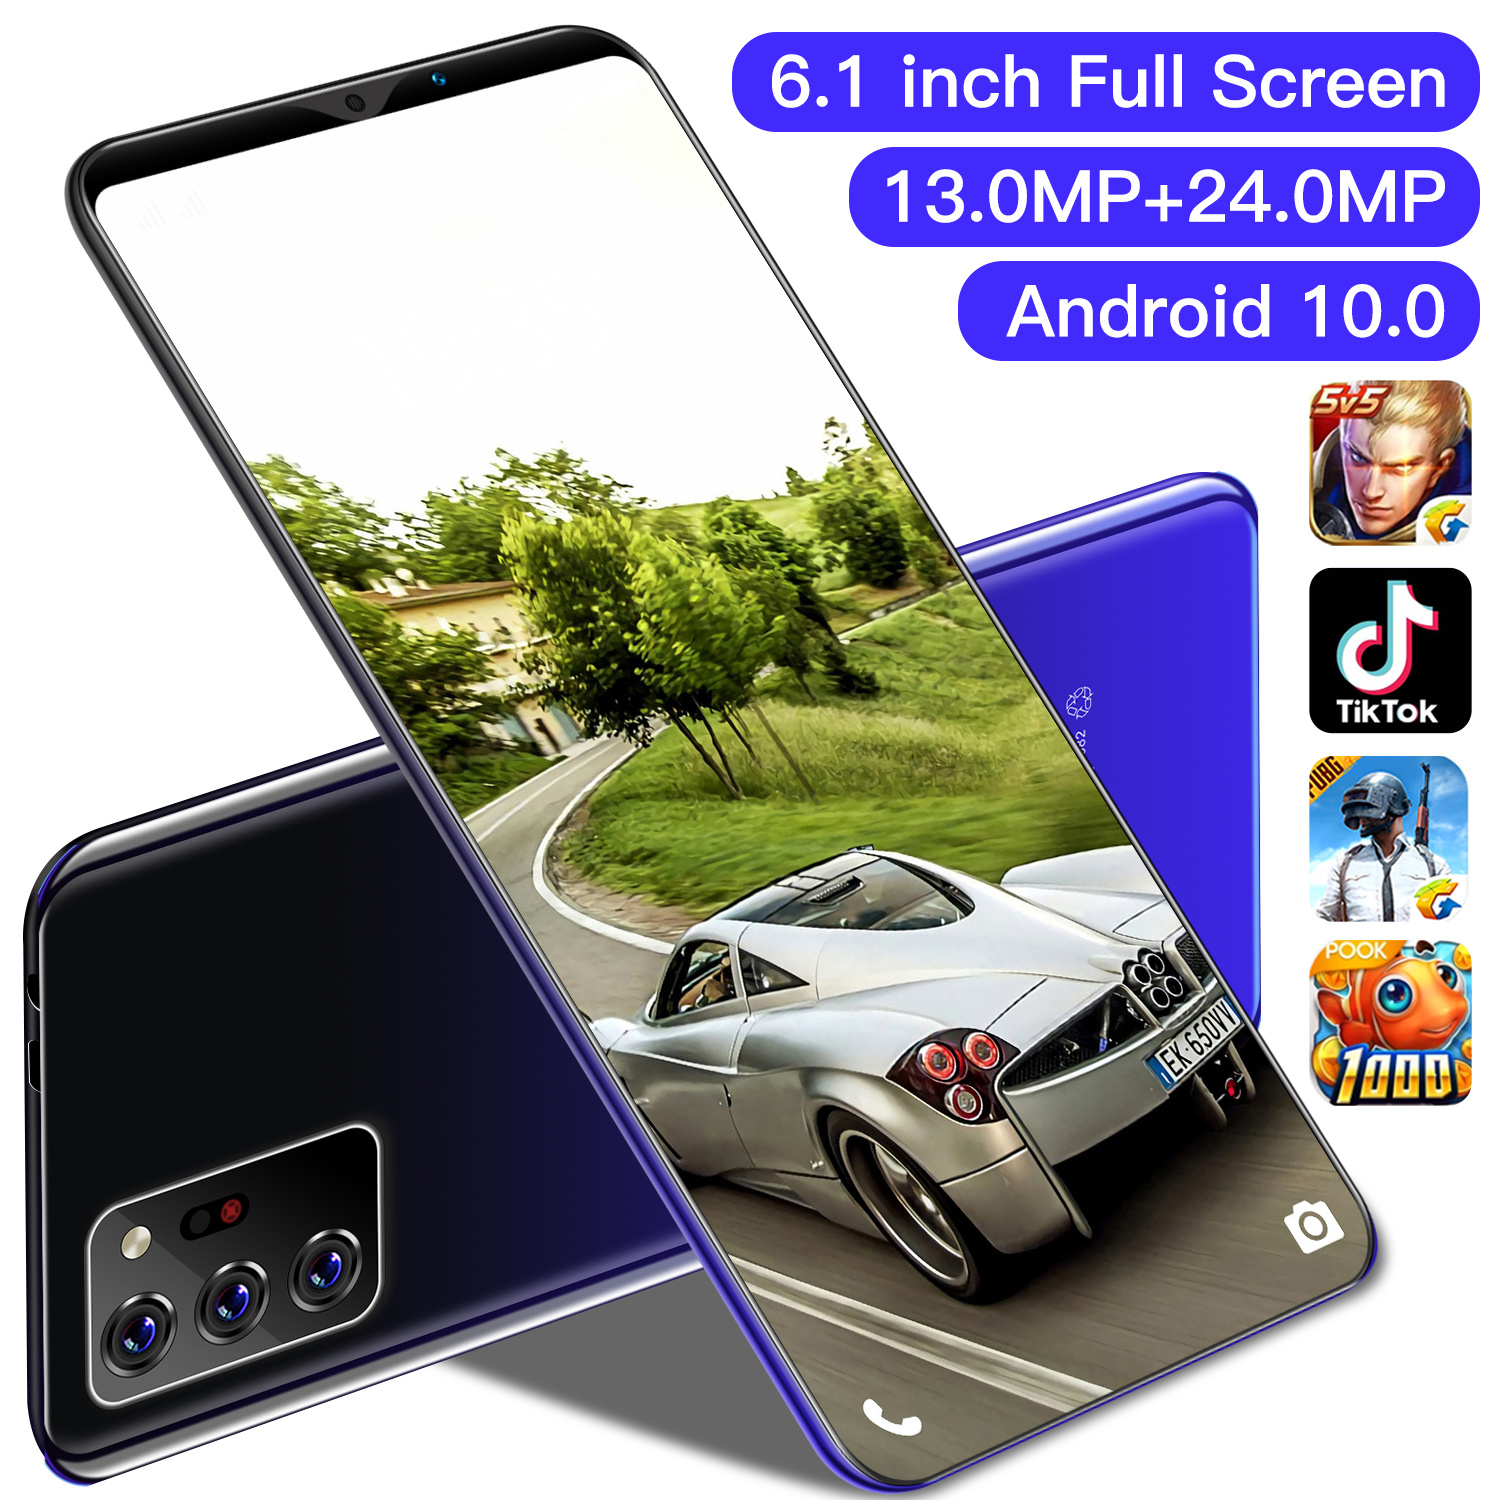 4G LTE【hp terbaru 2021】COD note30plus ram 6+128GB handphone 6.1inci Android 10.0 hp murah cuci gudang 10 core android 4g android murahBuka kunci sidik jari Pengenalan wajah, pembukaan kunci sidik jari, AI, COD cicil DP